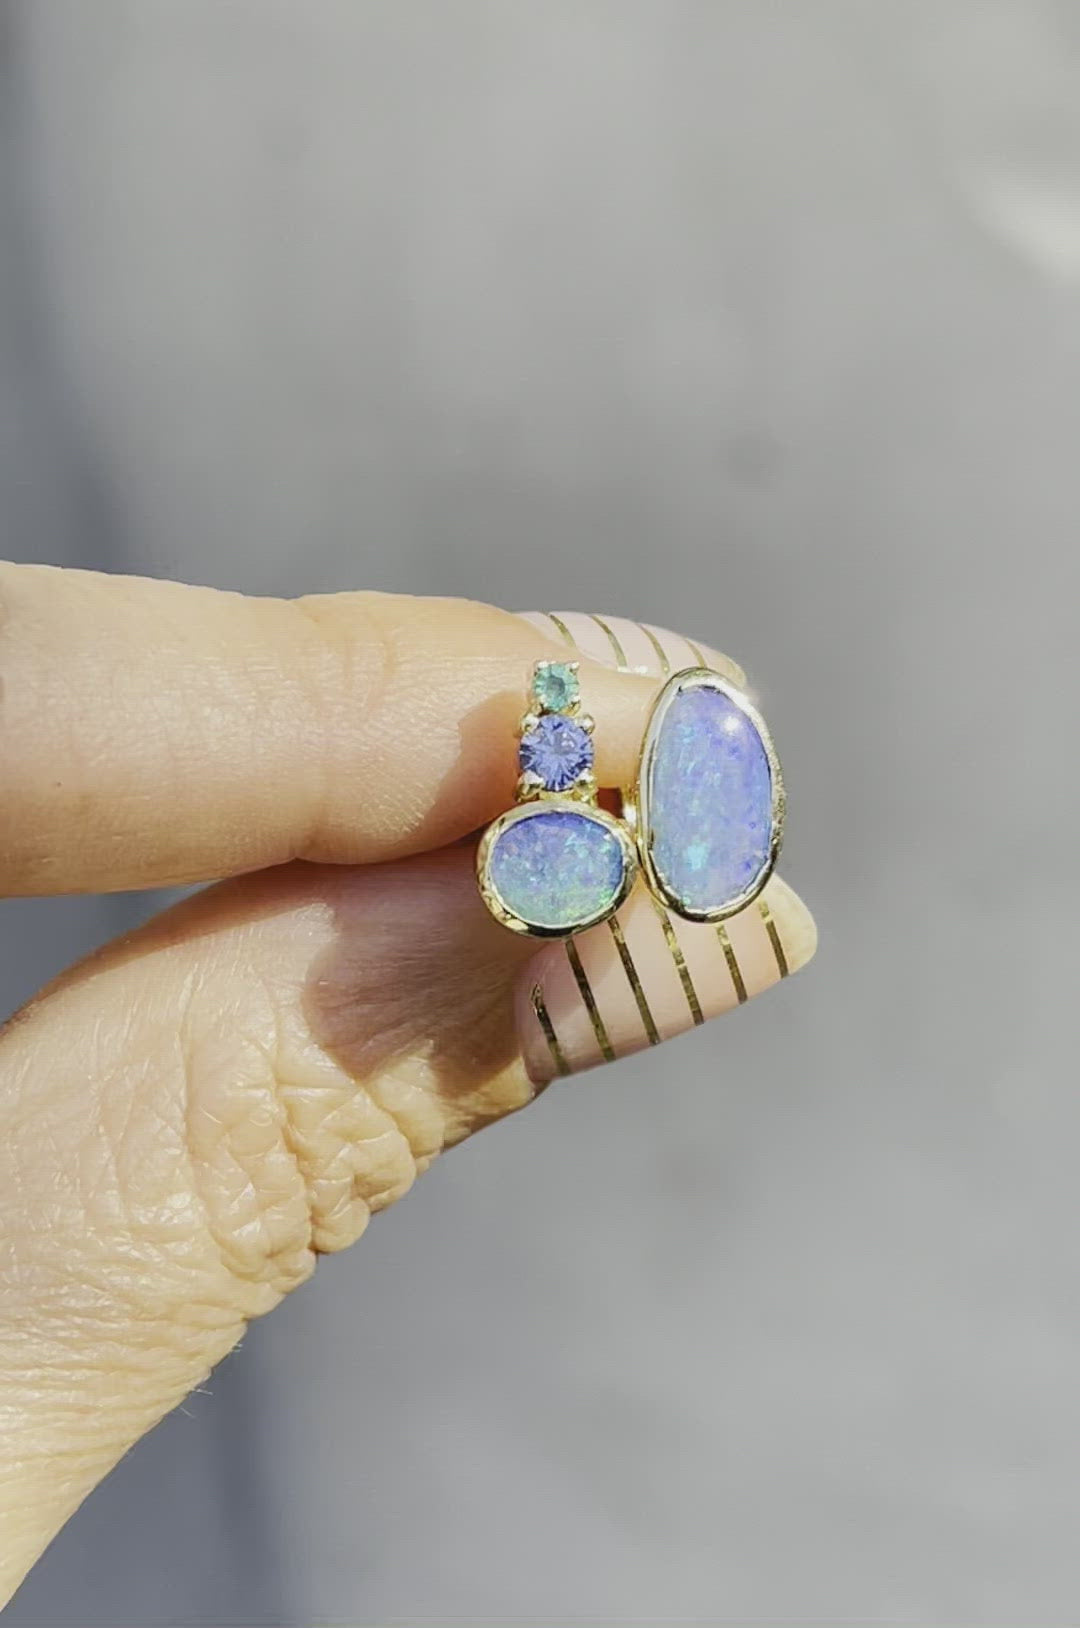 Video of blue opal stud earrings by NIXIN Jewelry moving in sunlight